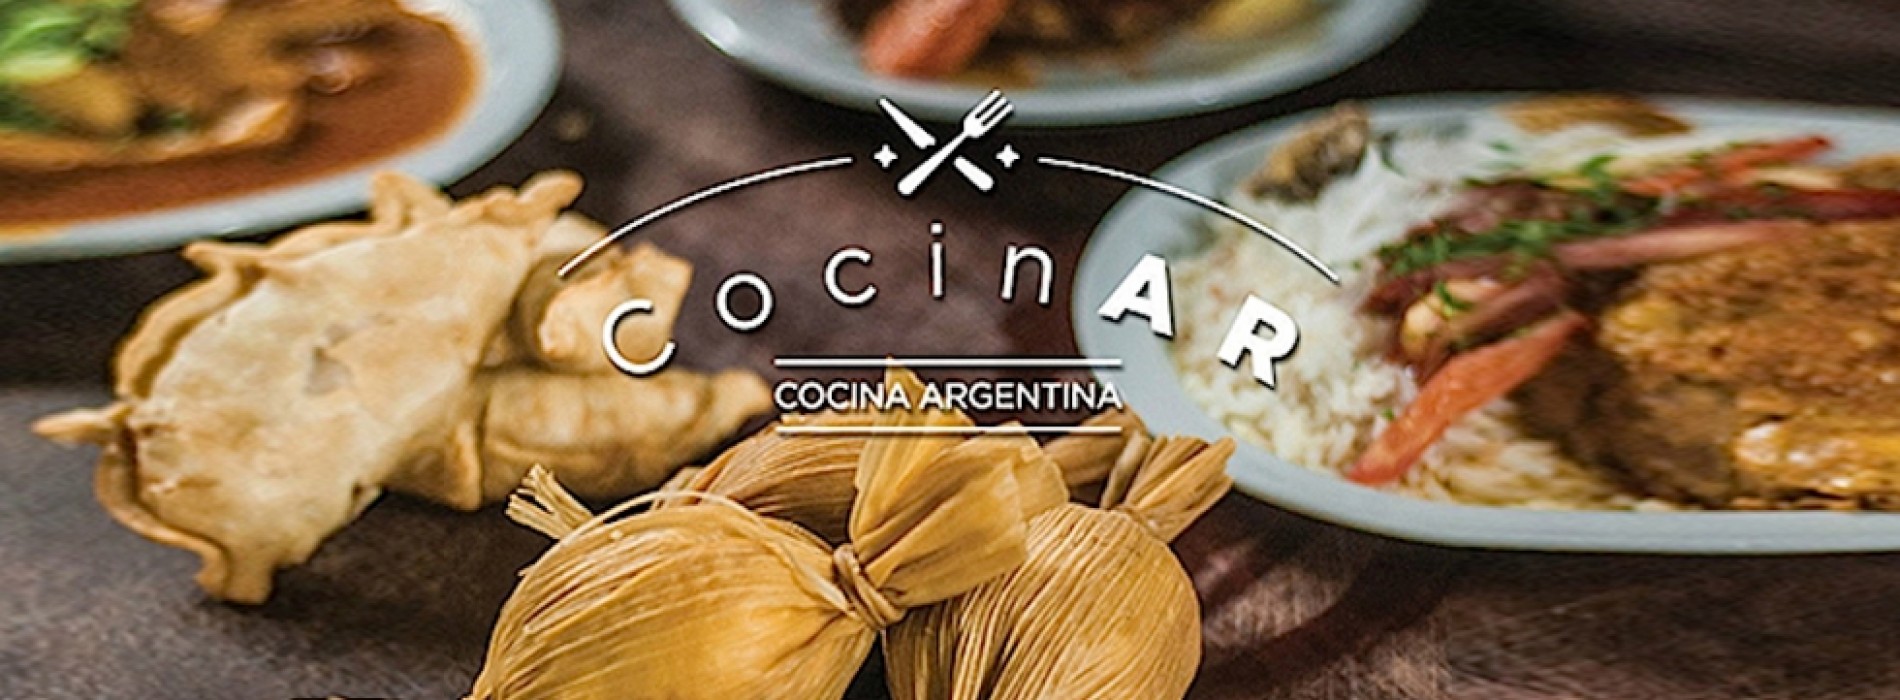 The CocinAR plan won the Excelencias Gourmet Award